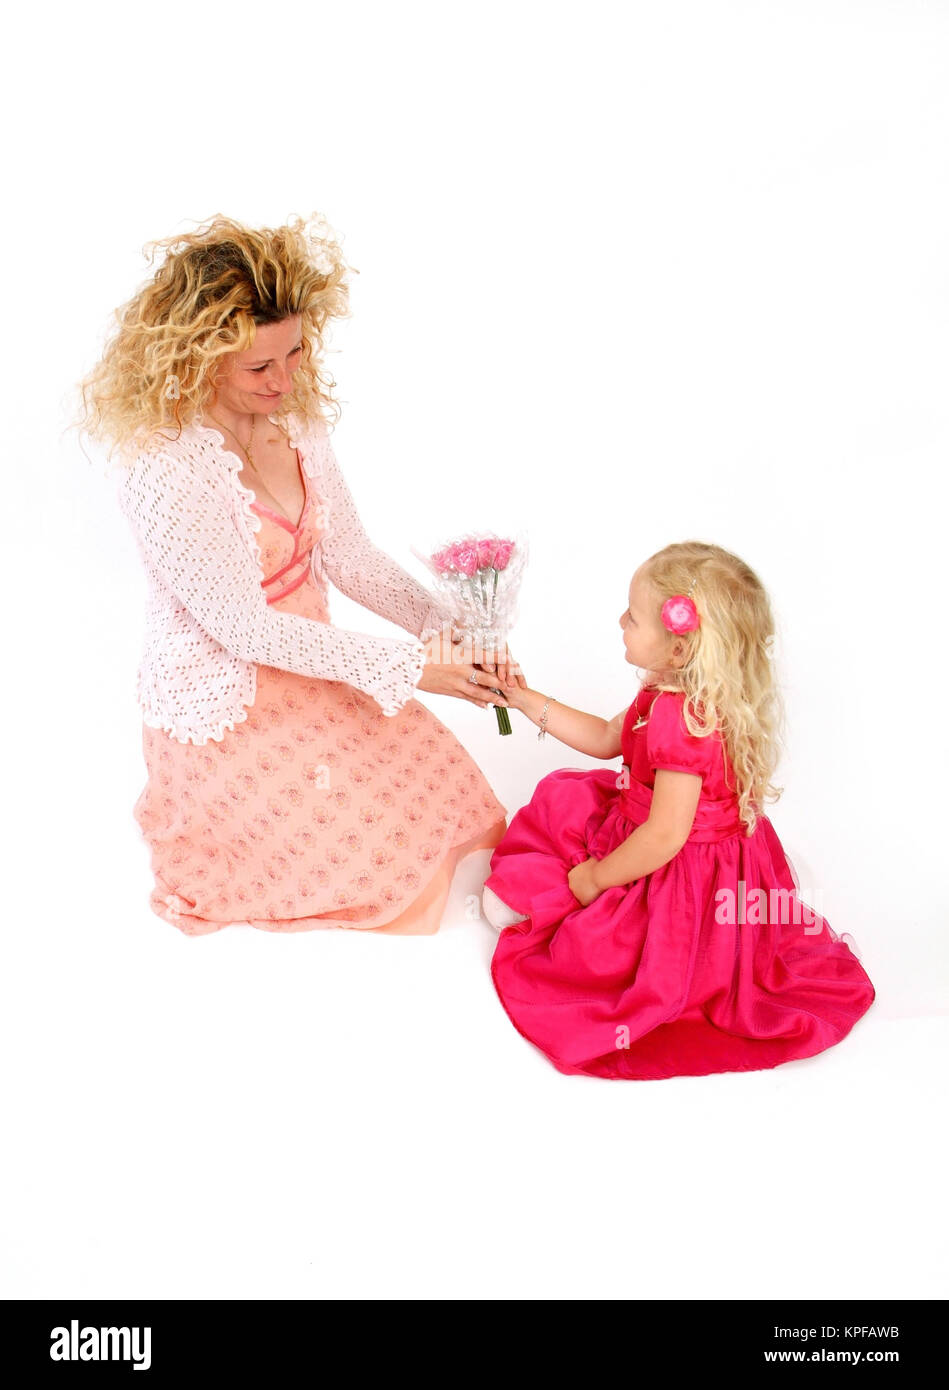 Tochter schenkt Mutter Blumentsrauss zum Muttertag - Mothers Day Stock Photo